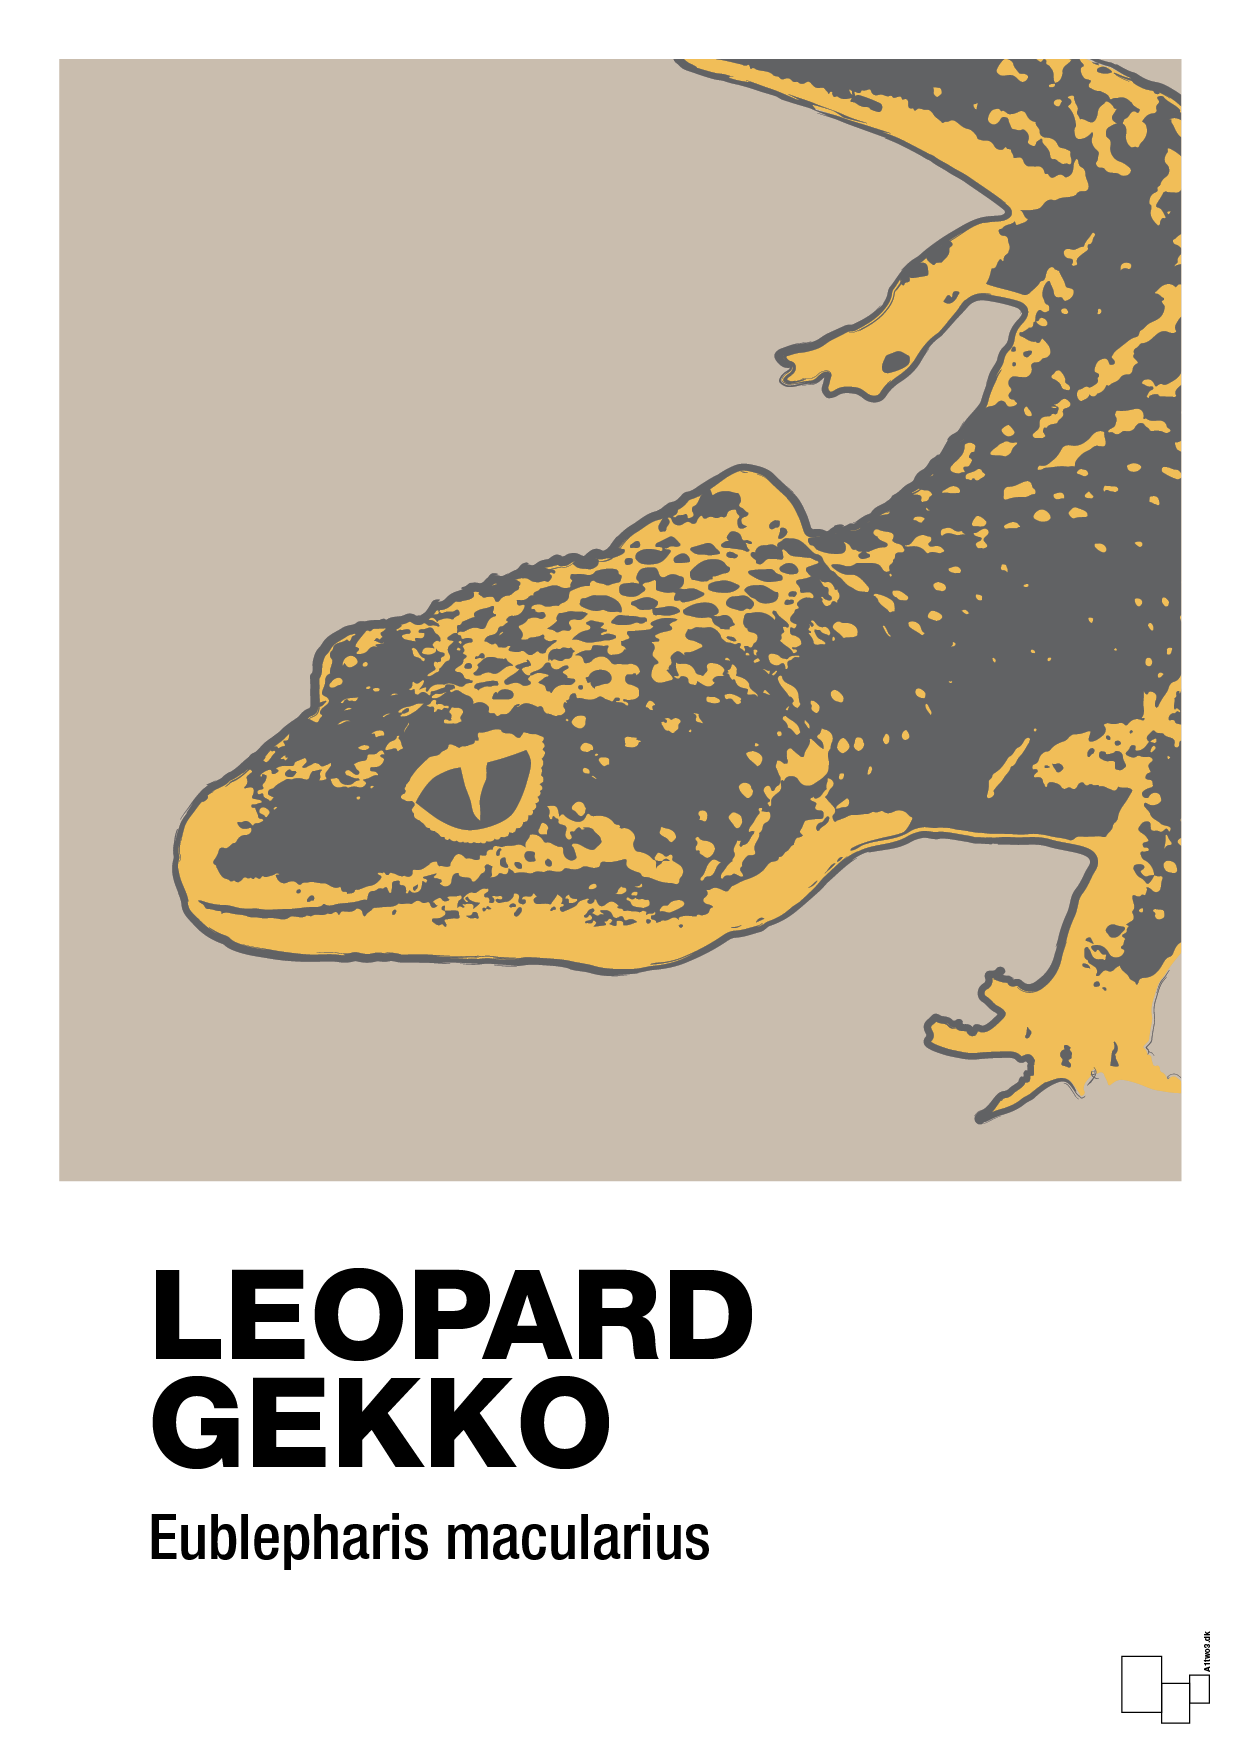 leopard gekko - Plakat med Videnskab i Creamy Mushroom